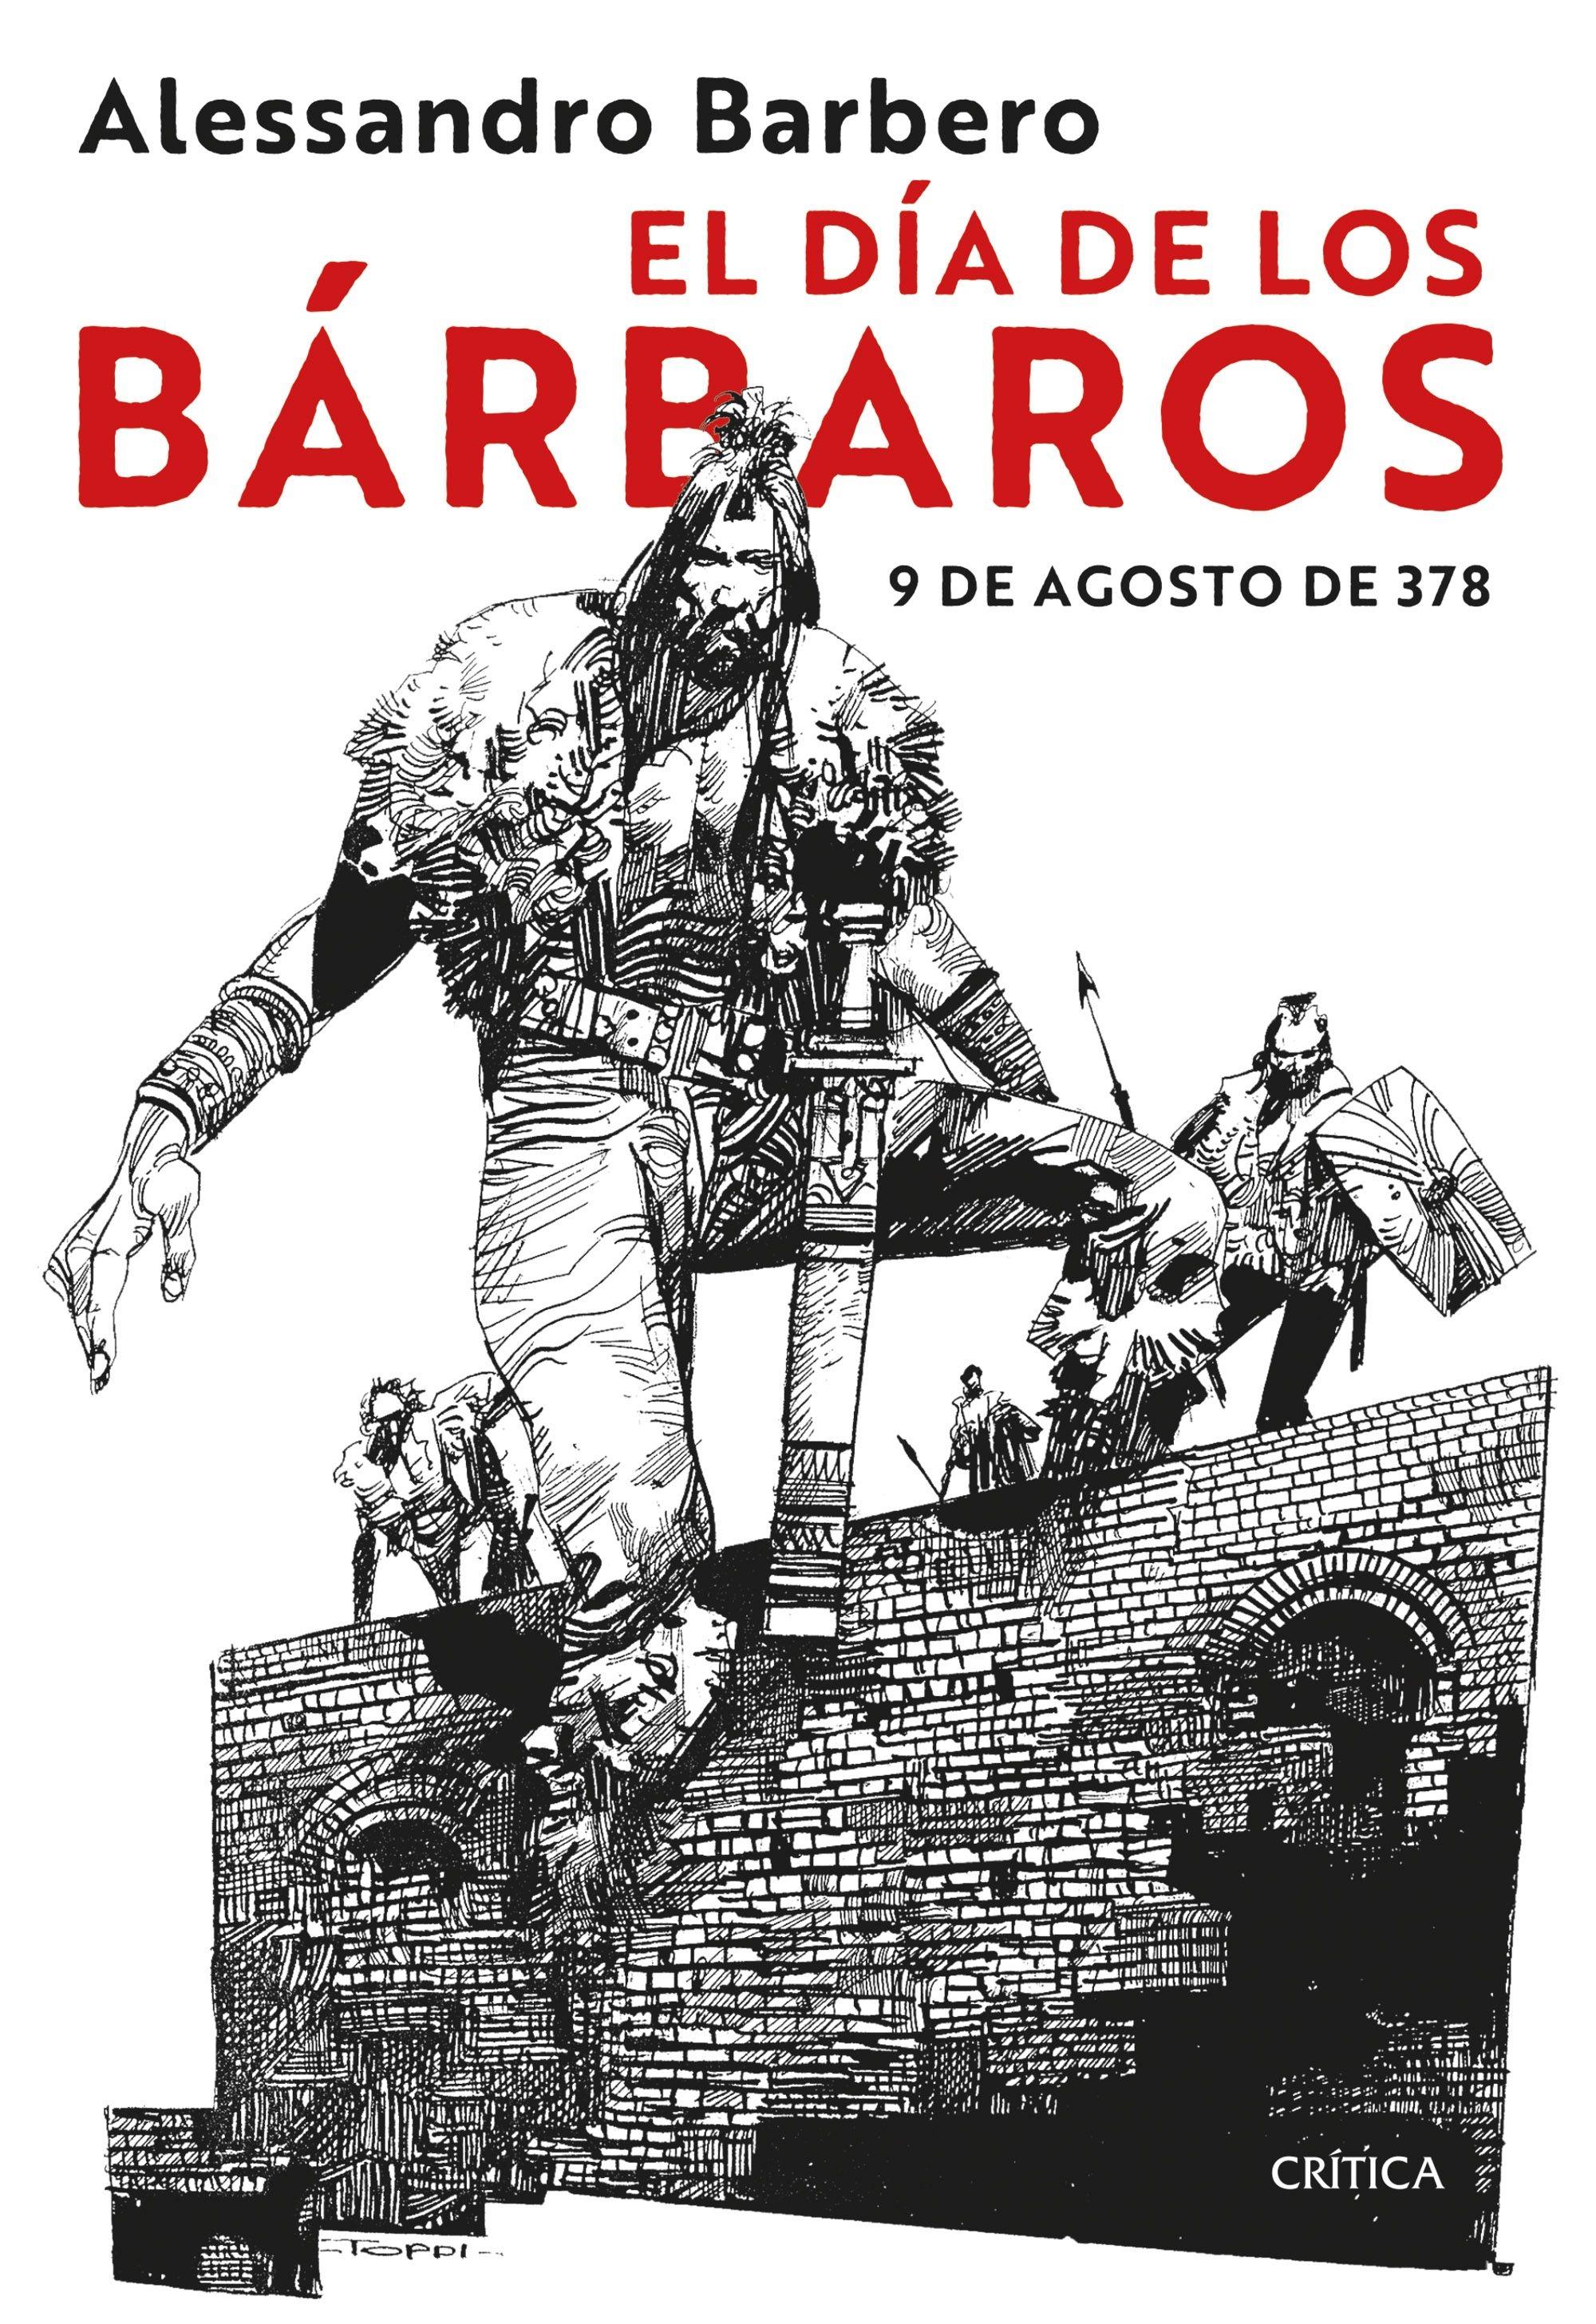 El Día de los Bárbaros "9 de Agosto de 378"